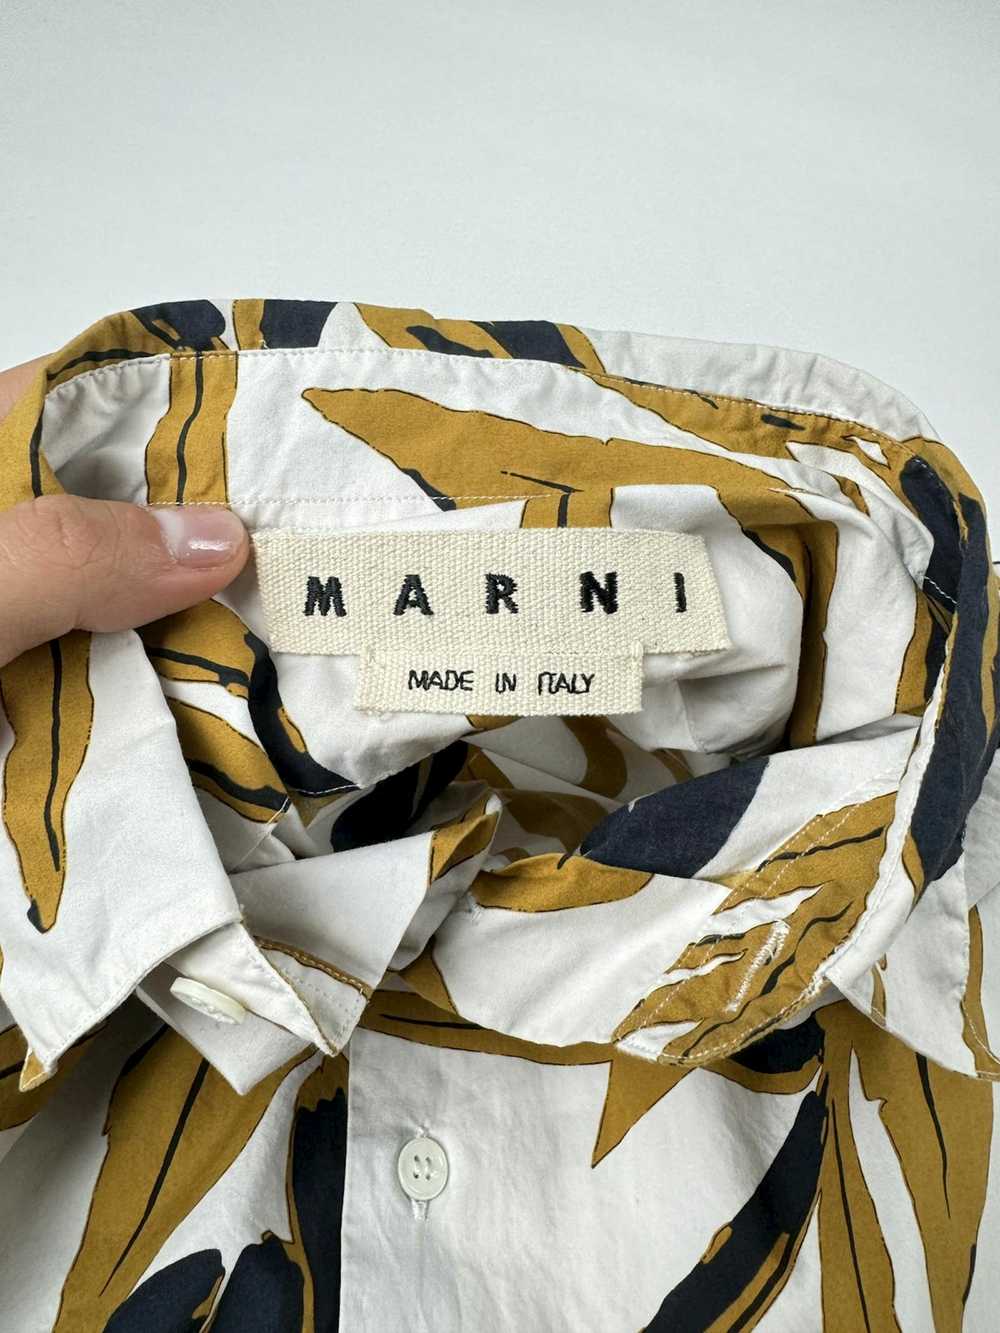 Marni Marni Printed Button Up Shirt - image 8